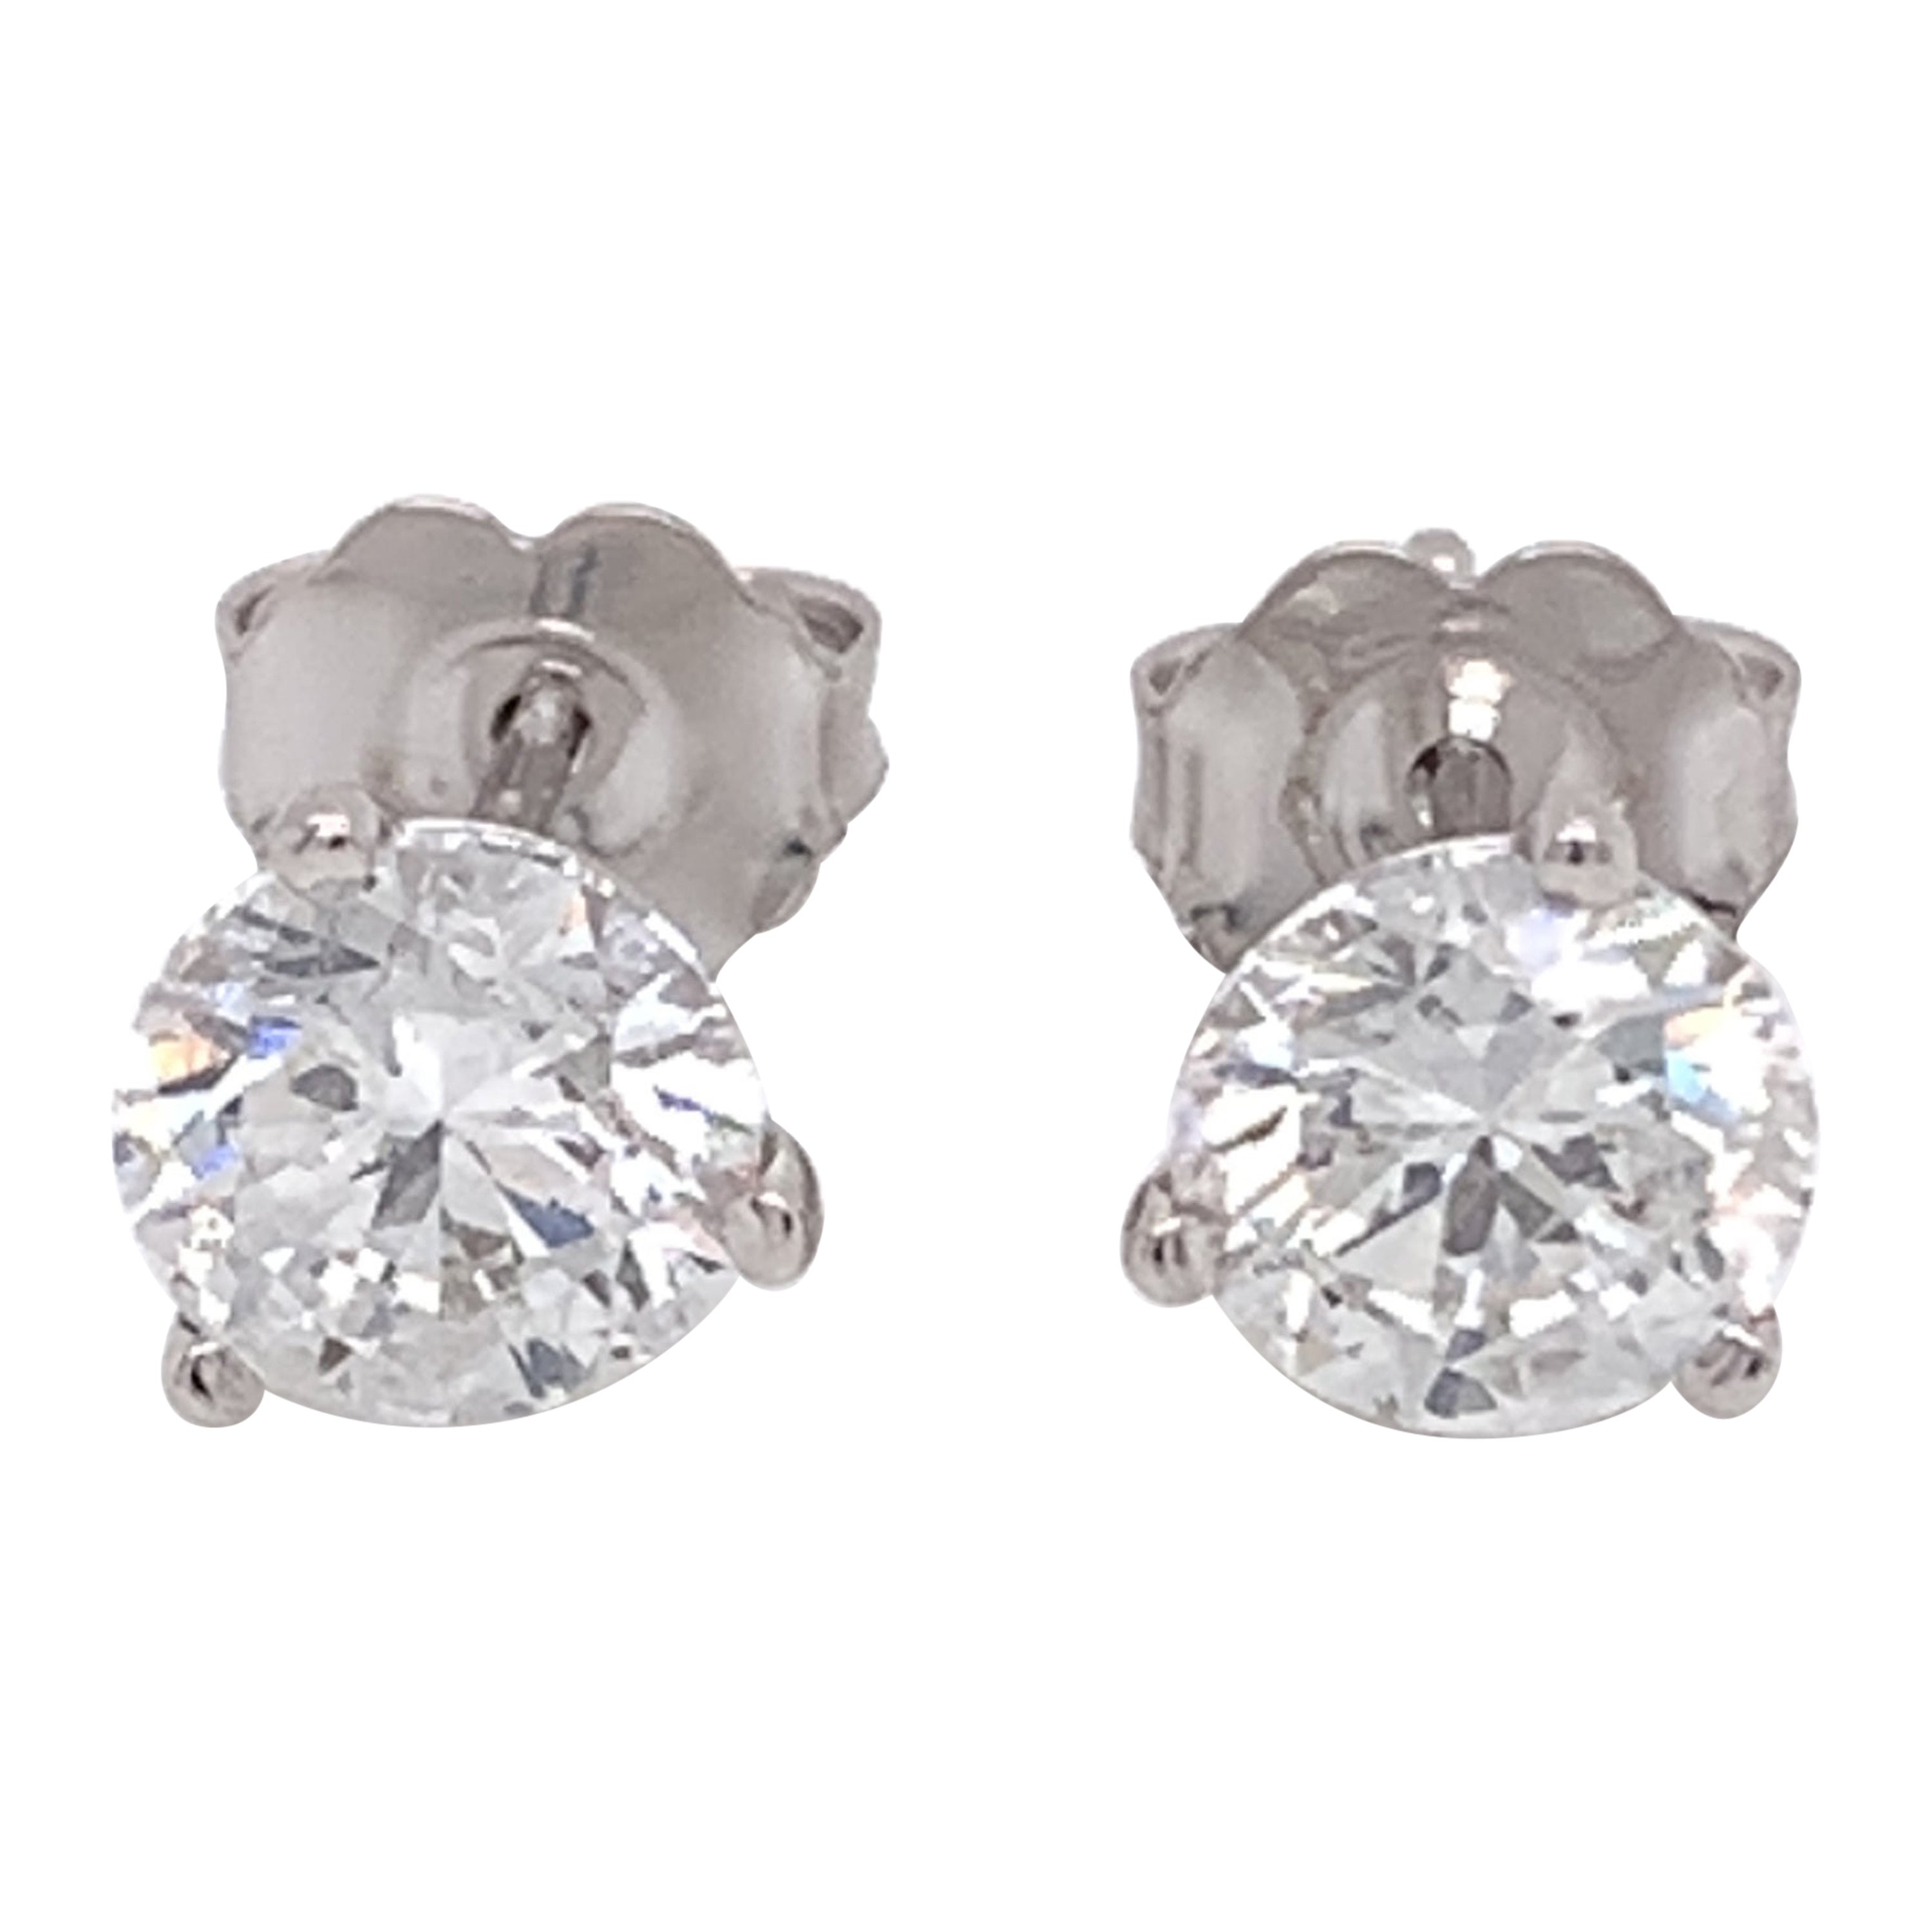 Medium Sized Diamond Stud Earrings on 18kt White Gold